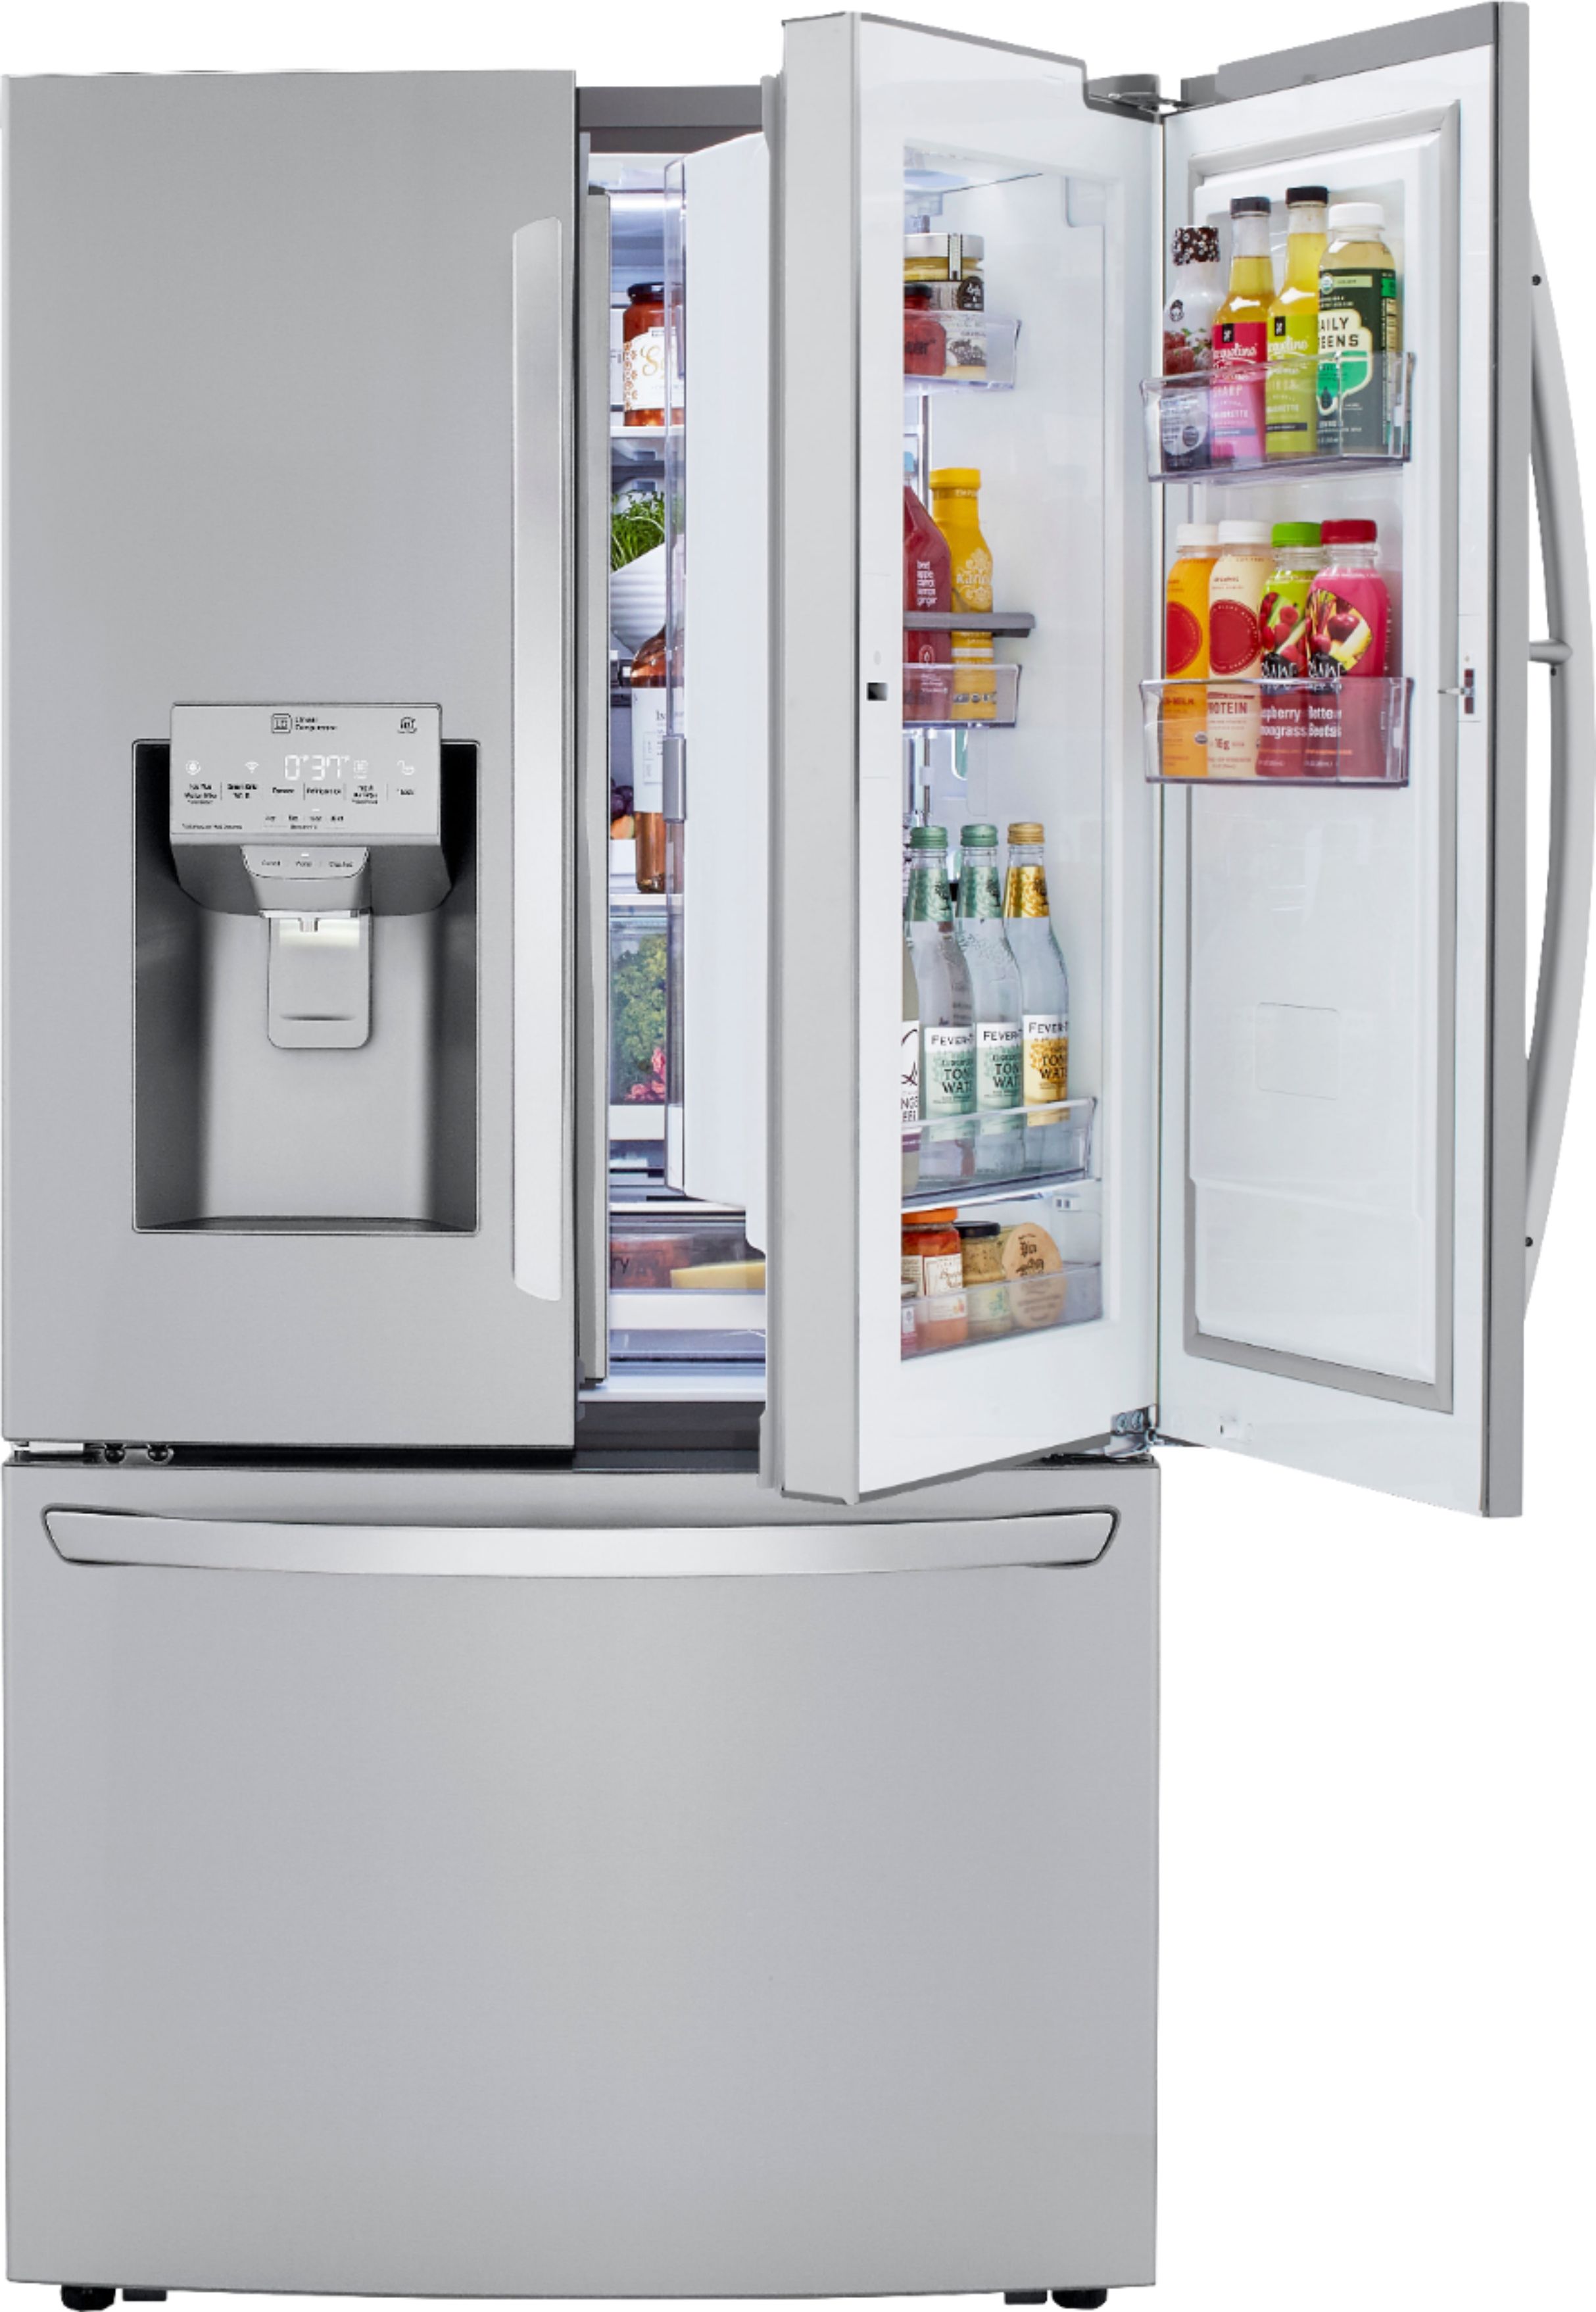 20+ Lg fridge freezer making loud noise ideas in 2021 